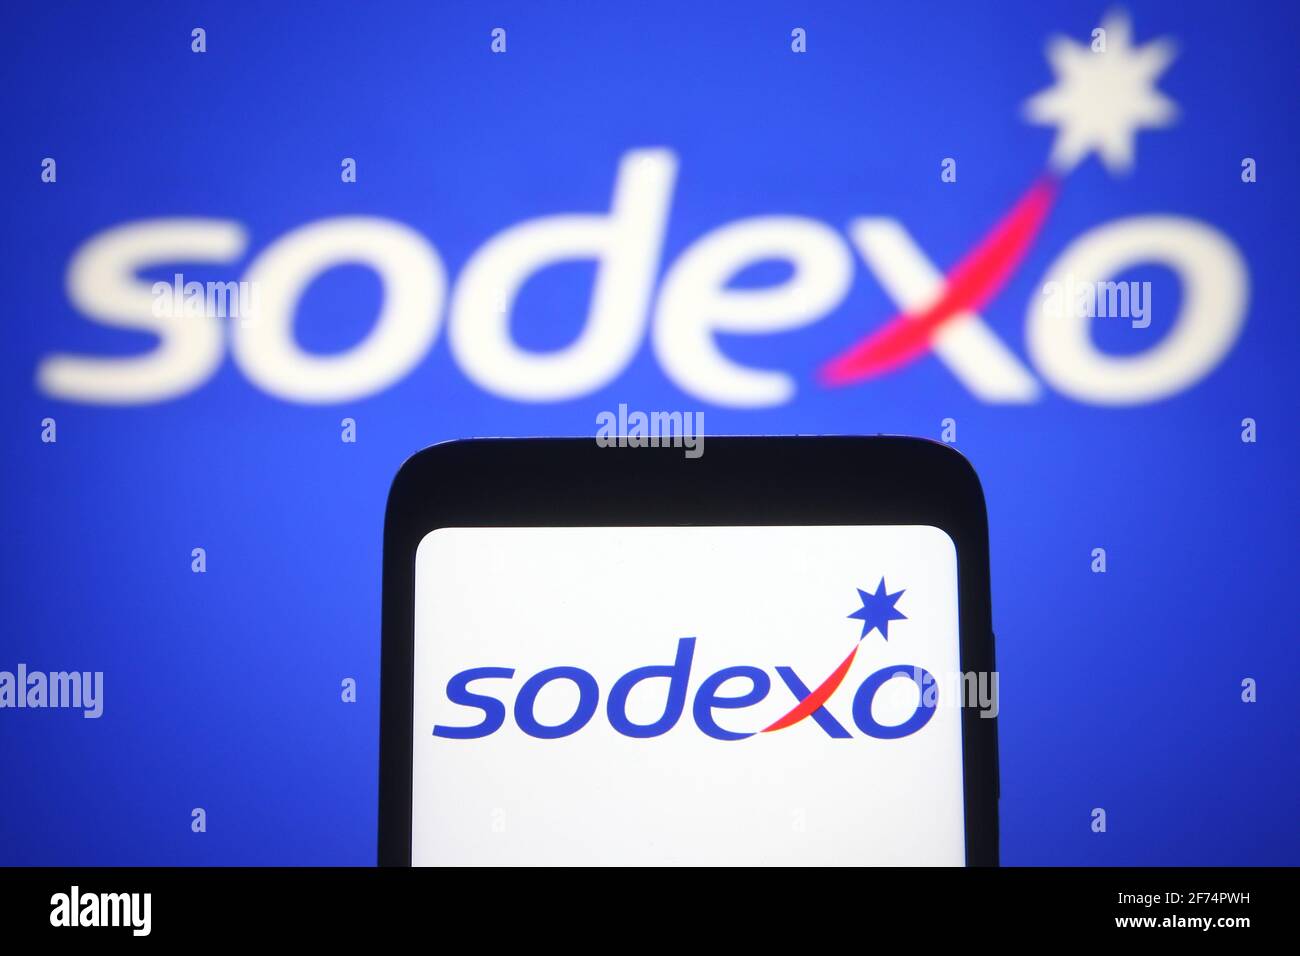 sodexo müşteri hizmetleri telefon